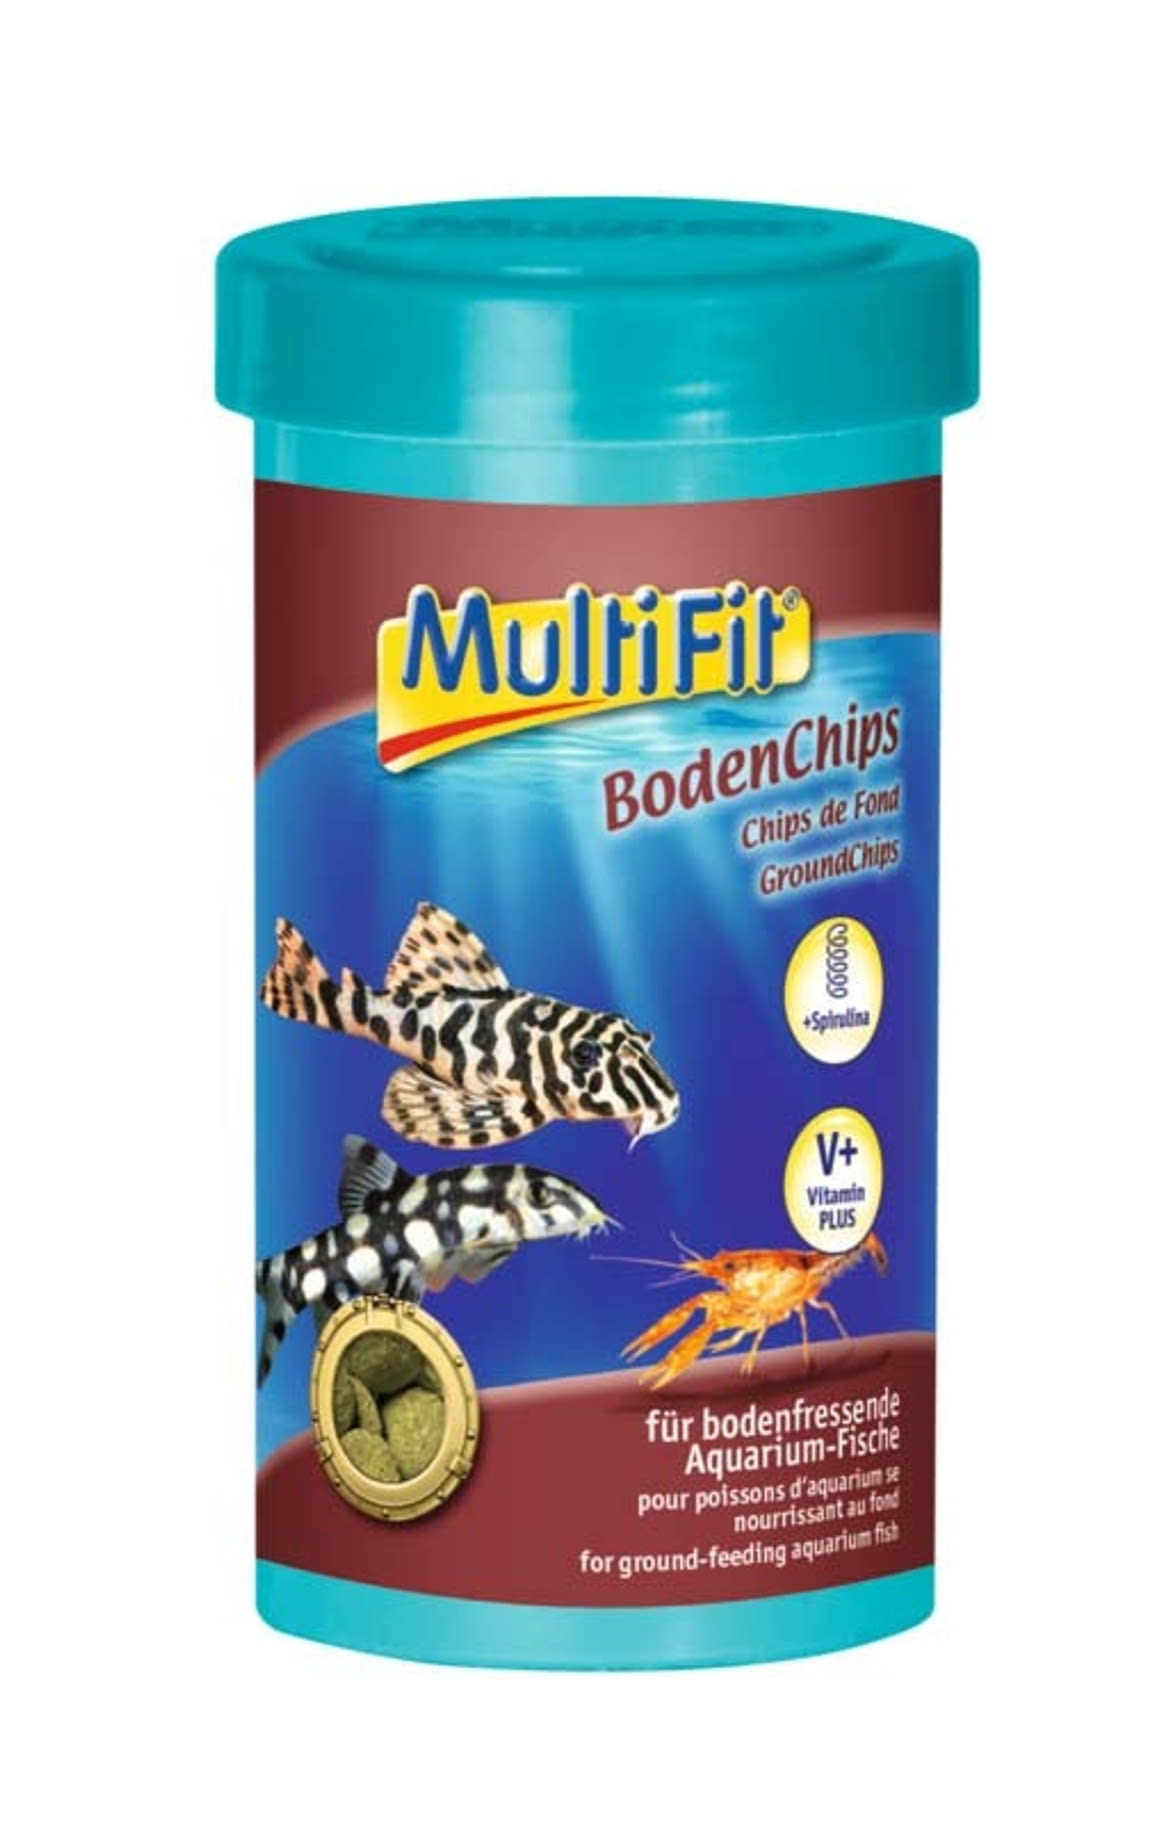 MultiFit haleledel ground chips